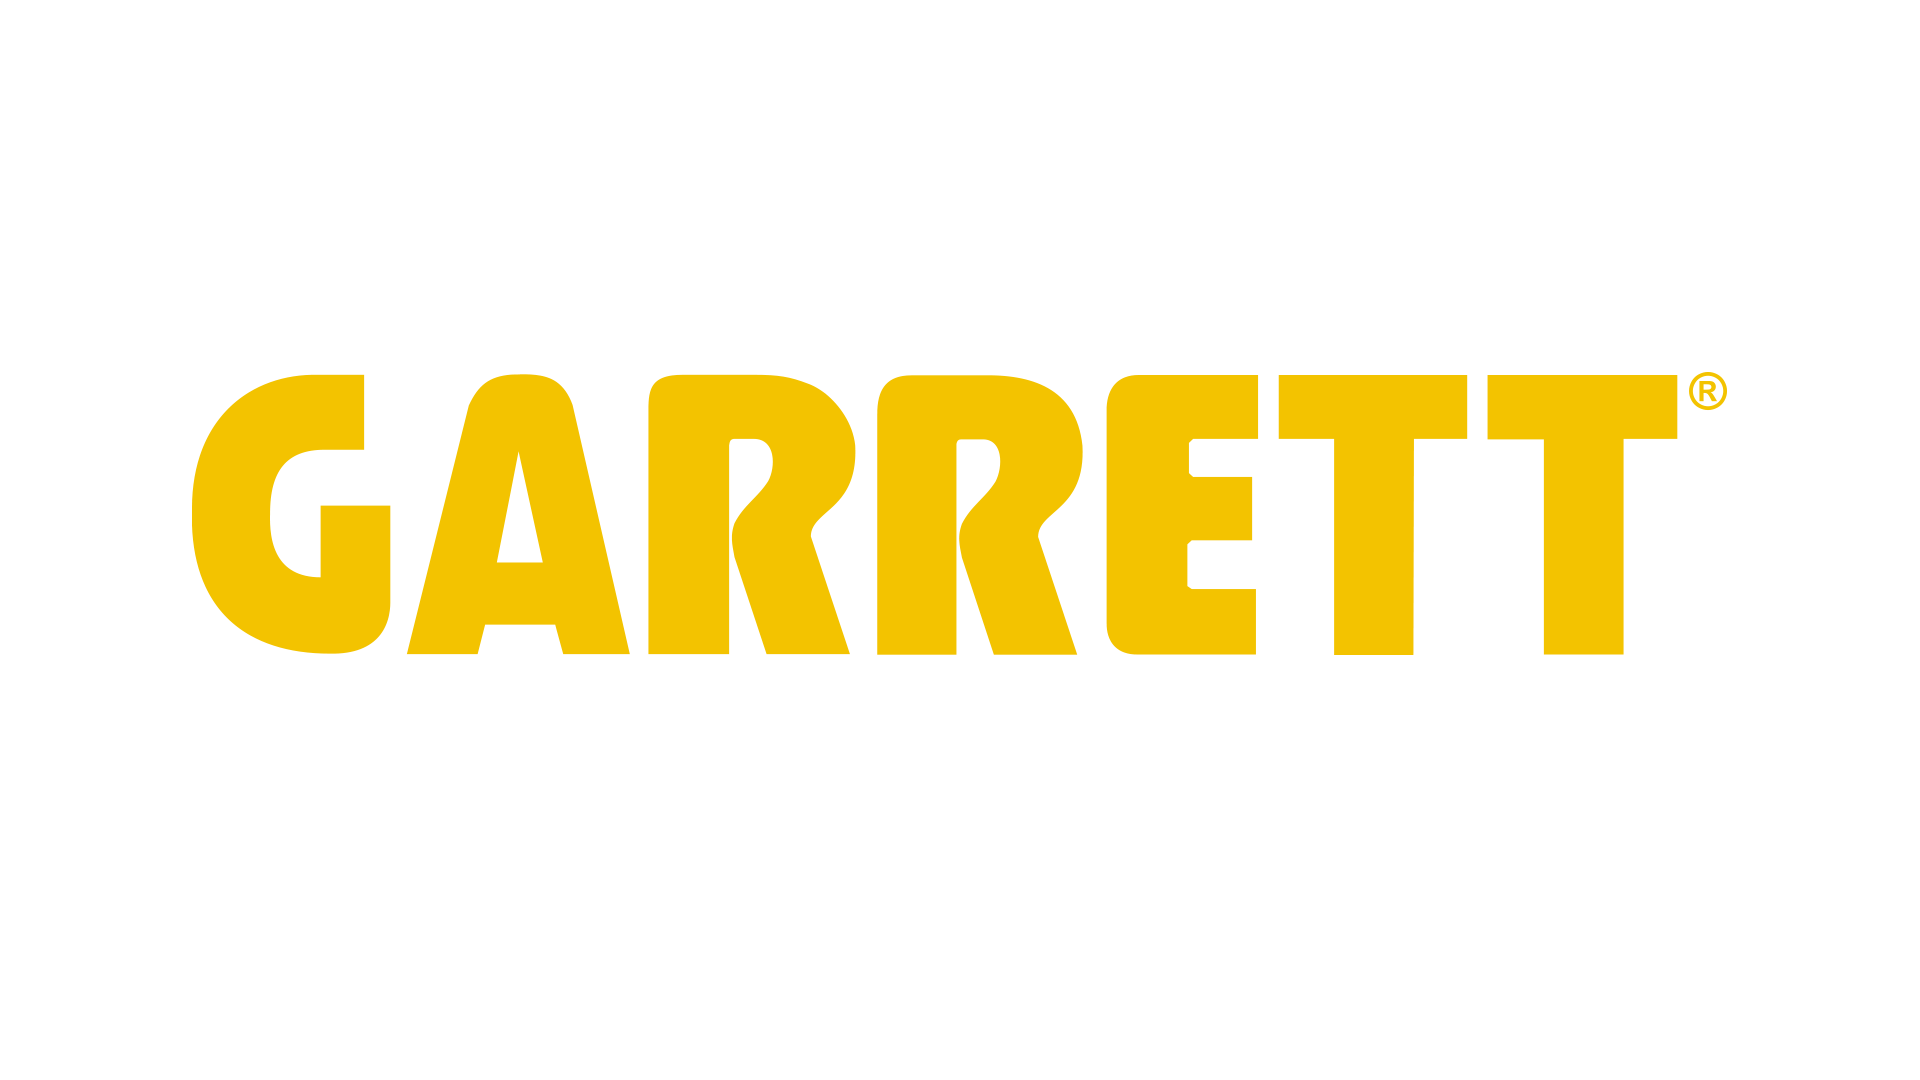 CARRETT